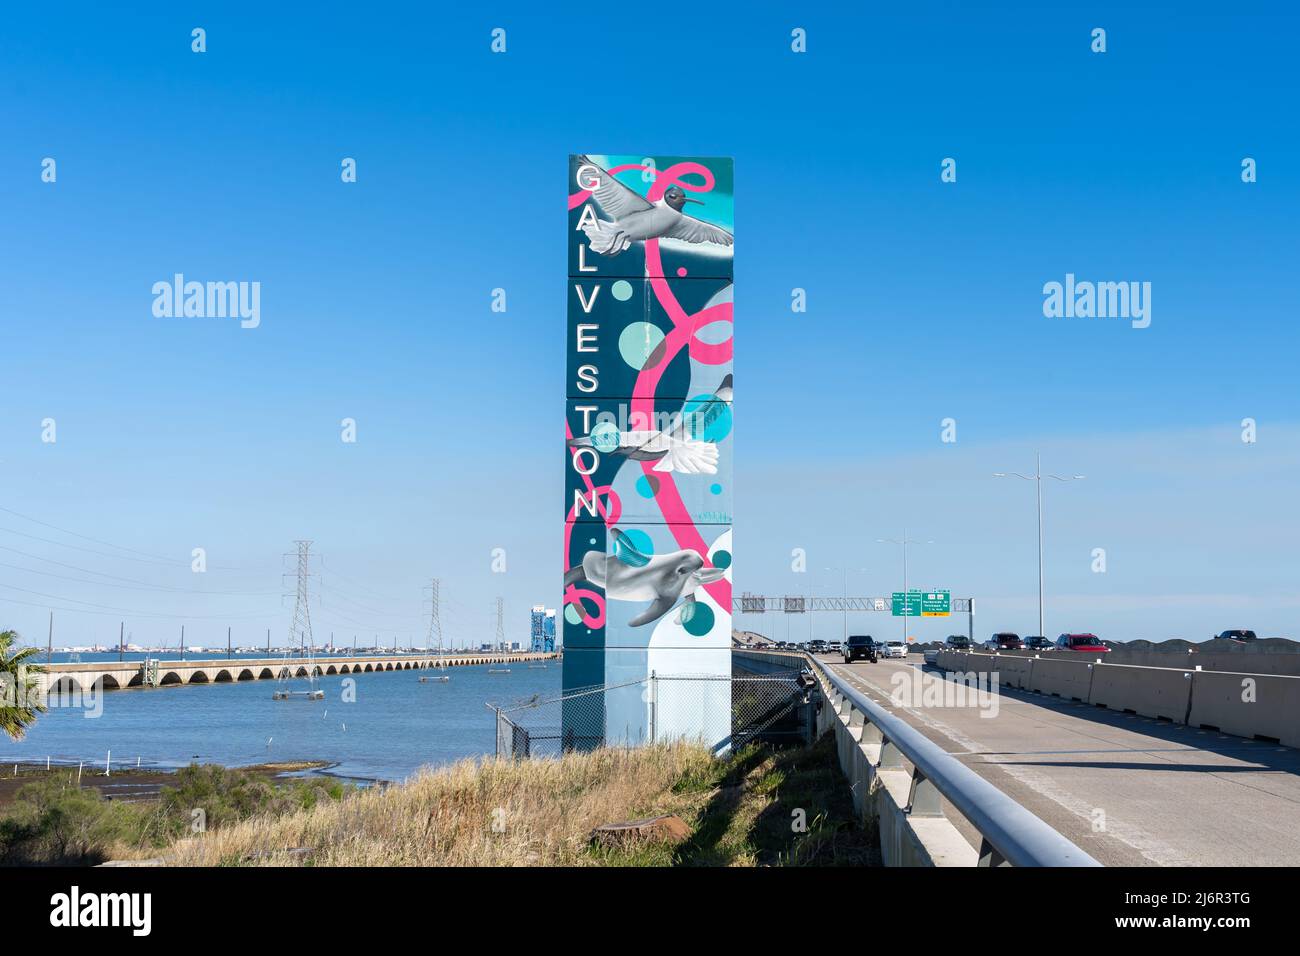 Galveston, Texas, USA - 12 marzo 2022: Un cartello di benvenuto Galveston accanto alla Gulf Freeway a Galveston, Texas, USA. Galveston è un'isola città del Texas. Foto Stock